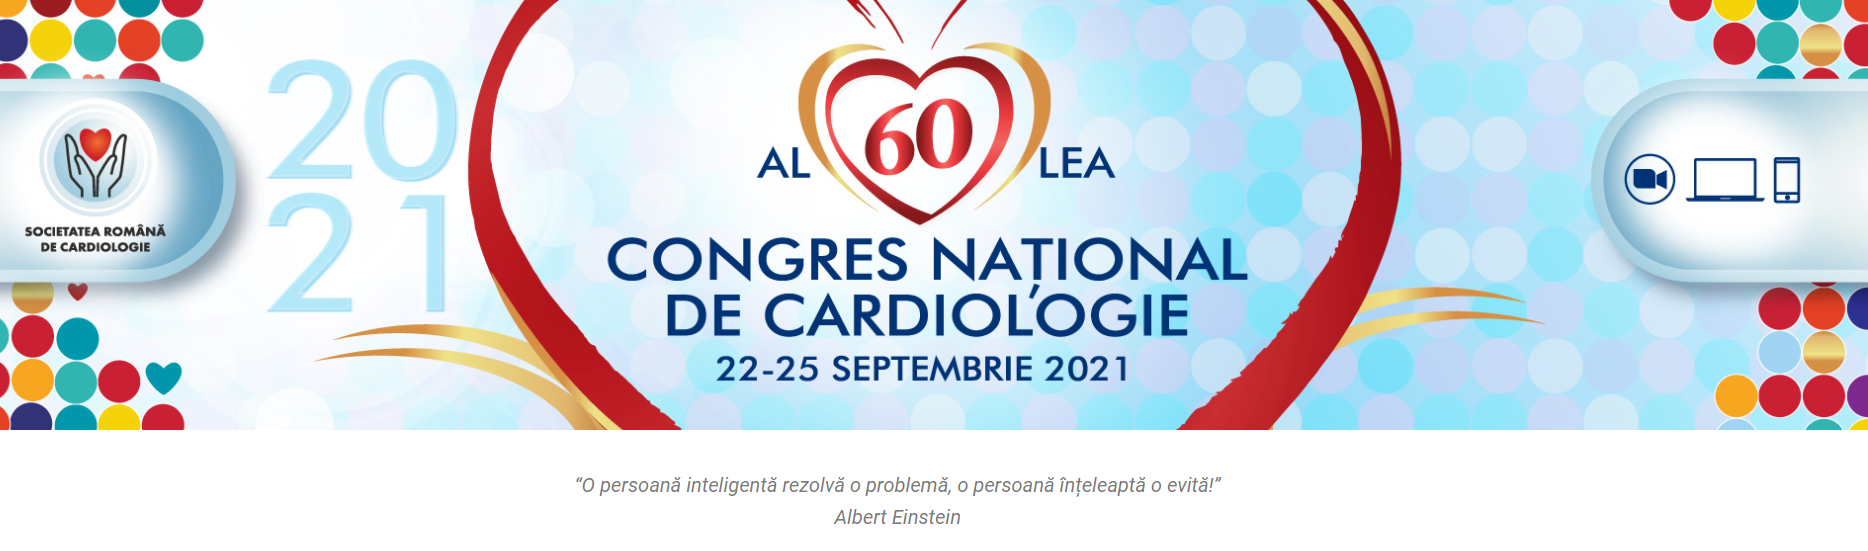 Congresul Național de Cardiologie 2021, la a 60-a ediție